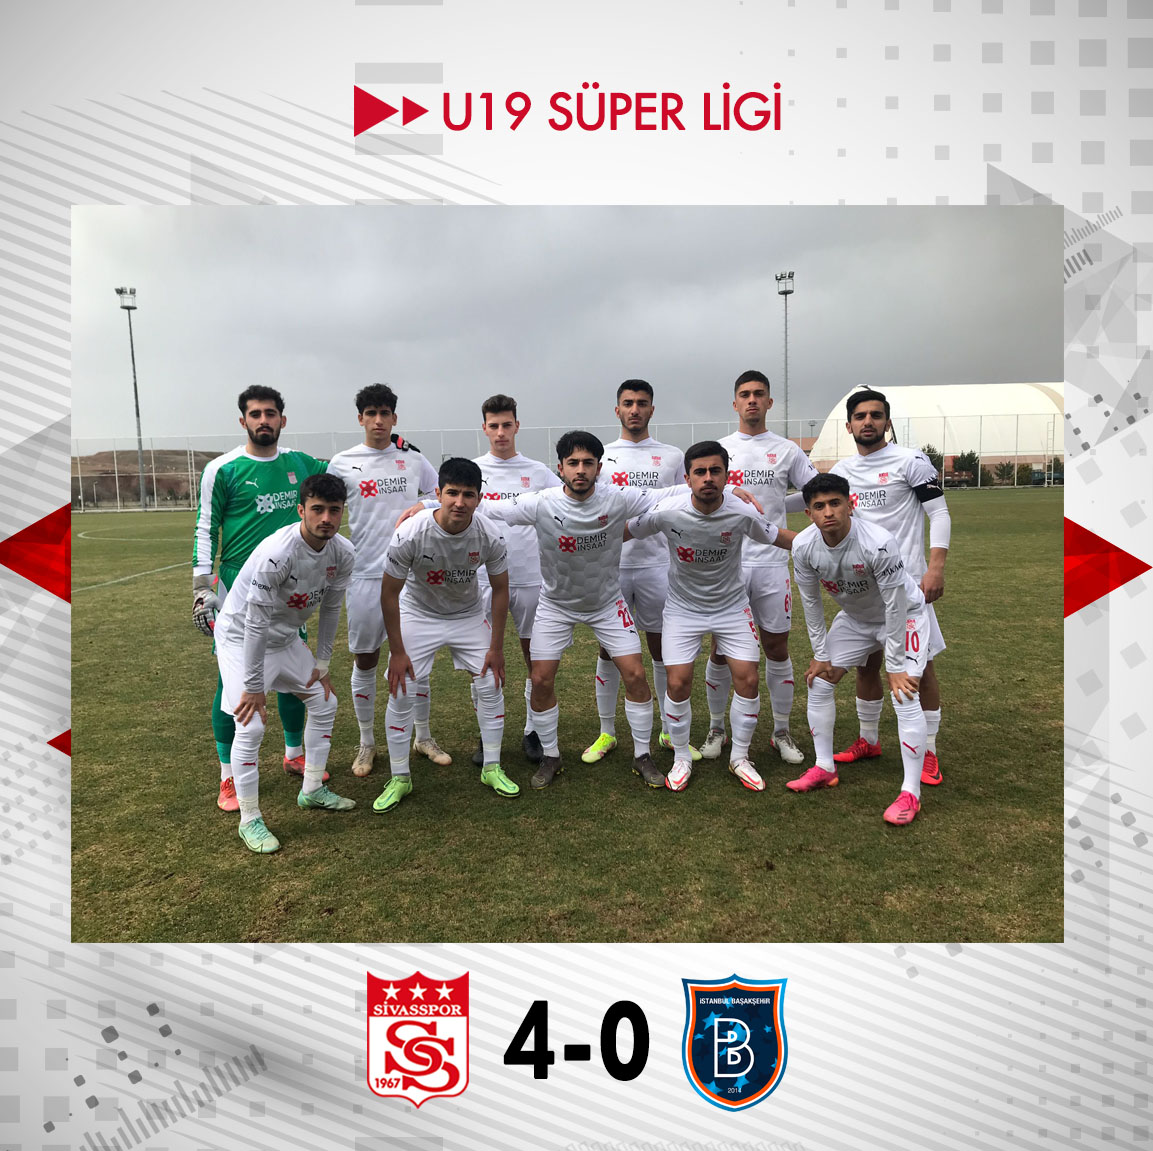 U19 takımımız ligin 28. hafta maçında sahamızda konuk ettiği Medipol Başakşehir'i 4️⃣-0️⃣ mağlup etti. ⚽ 32' Halit Çokyaşar ⚽ 42' Emirhan Tak ⚽ 47' Halit Çokyaşar ⚽ 87' Oğuzhan Yalçın